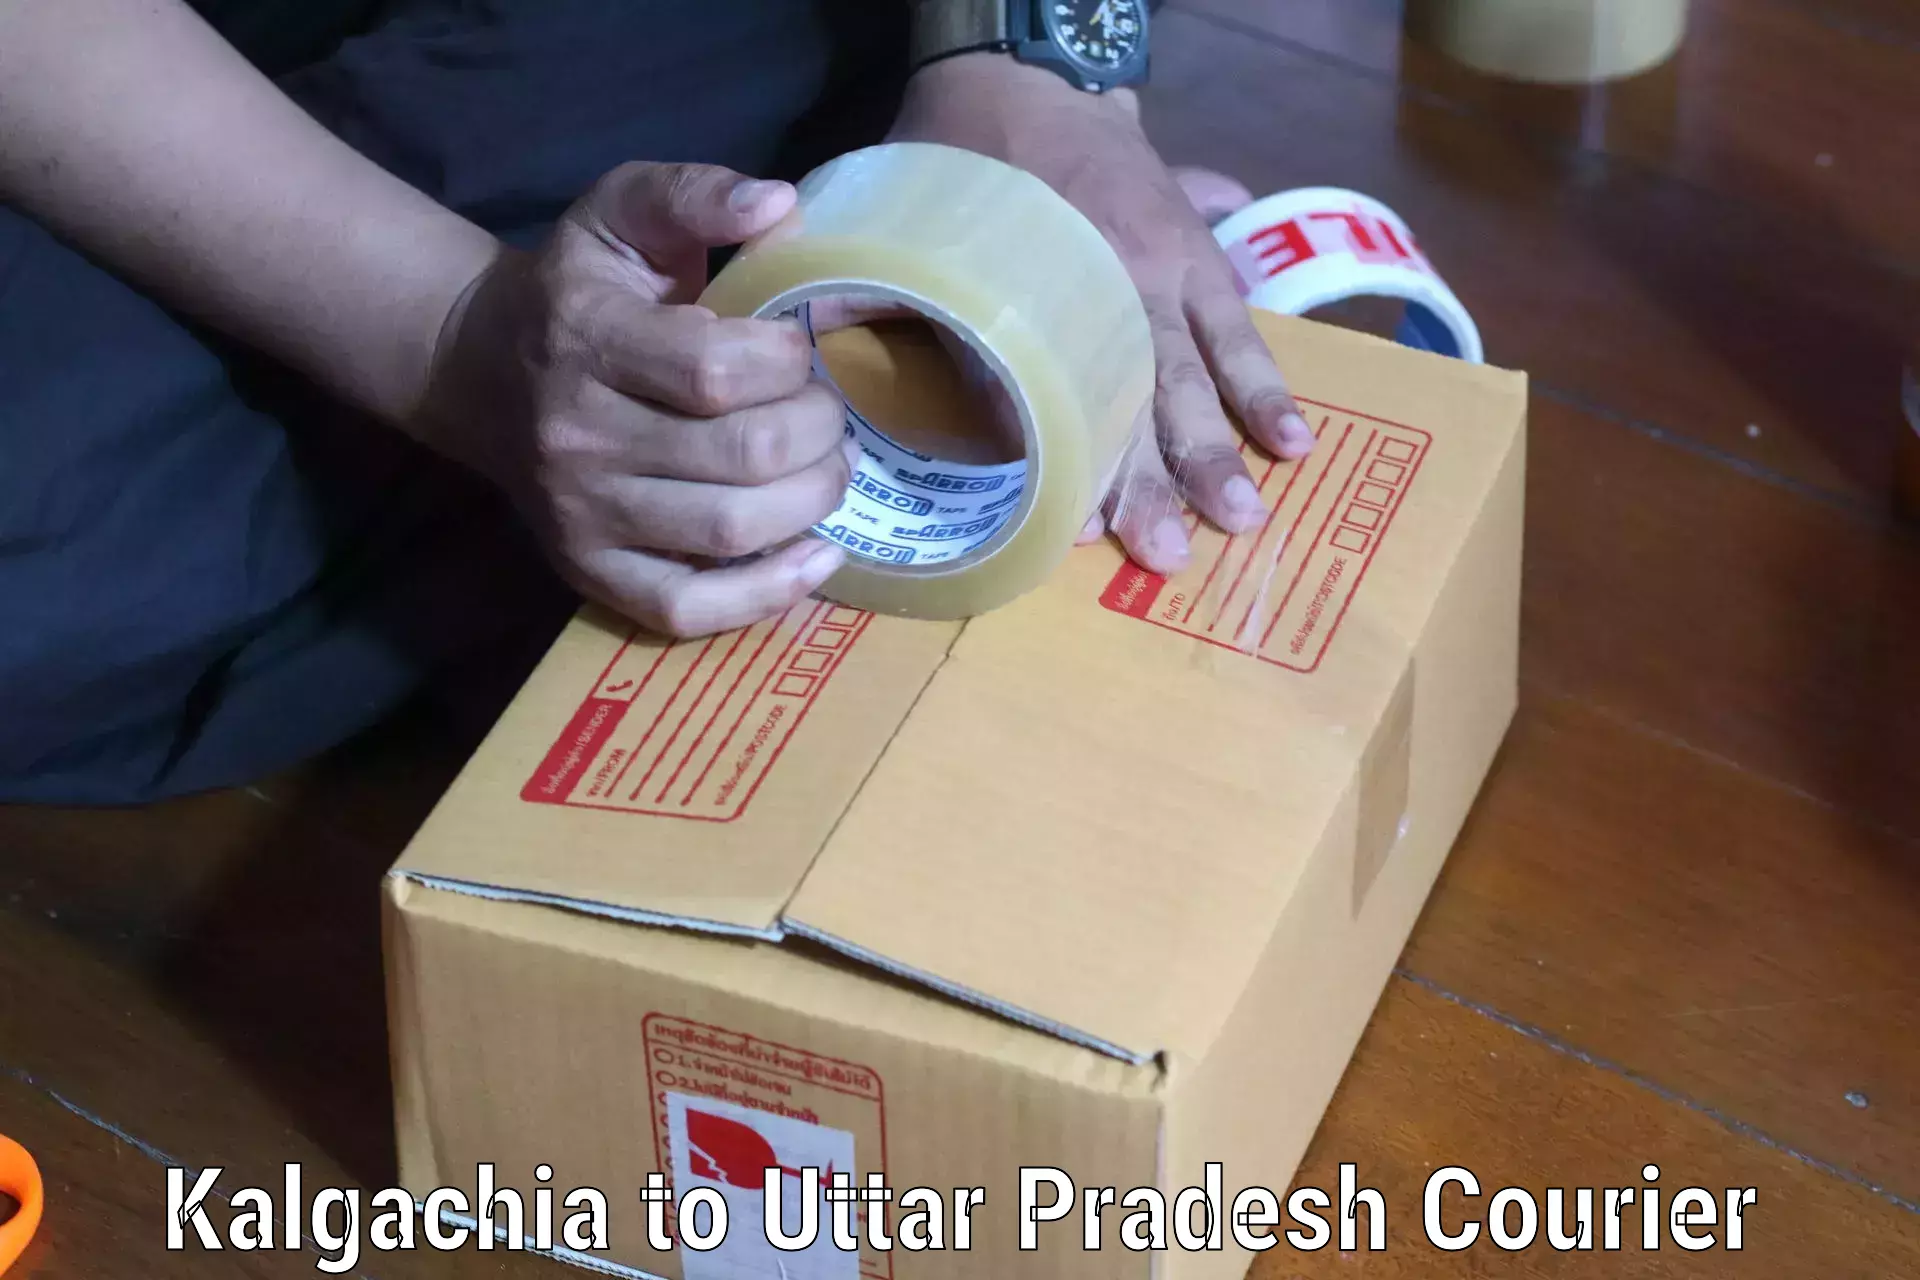 Global courier networks Kalgachia to Uttar Pradesh